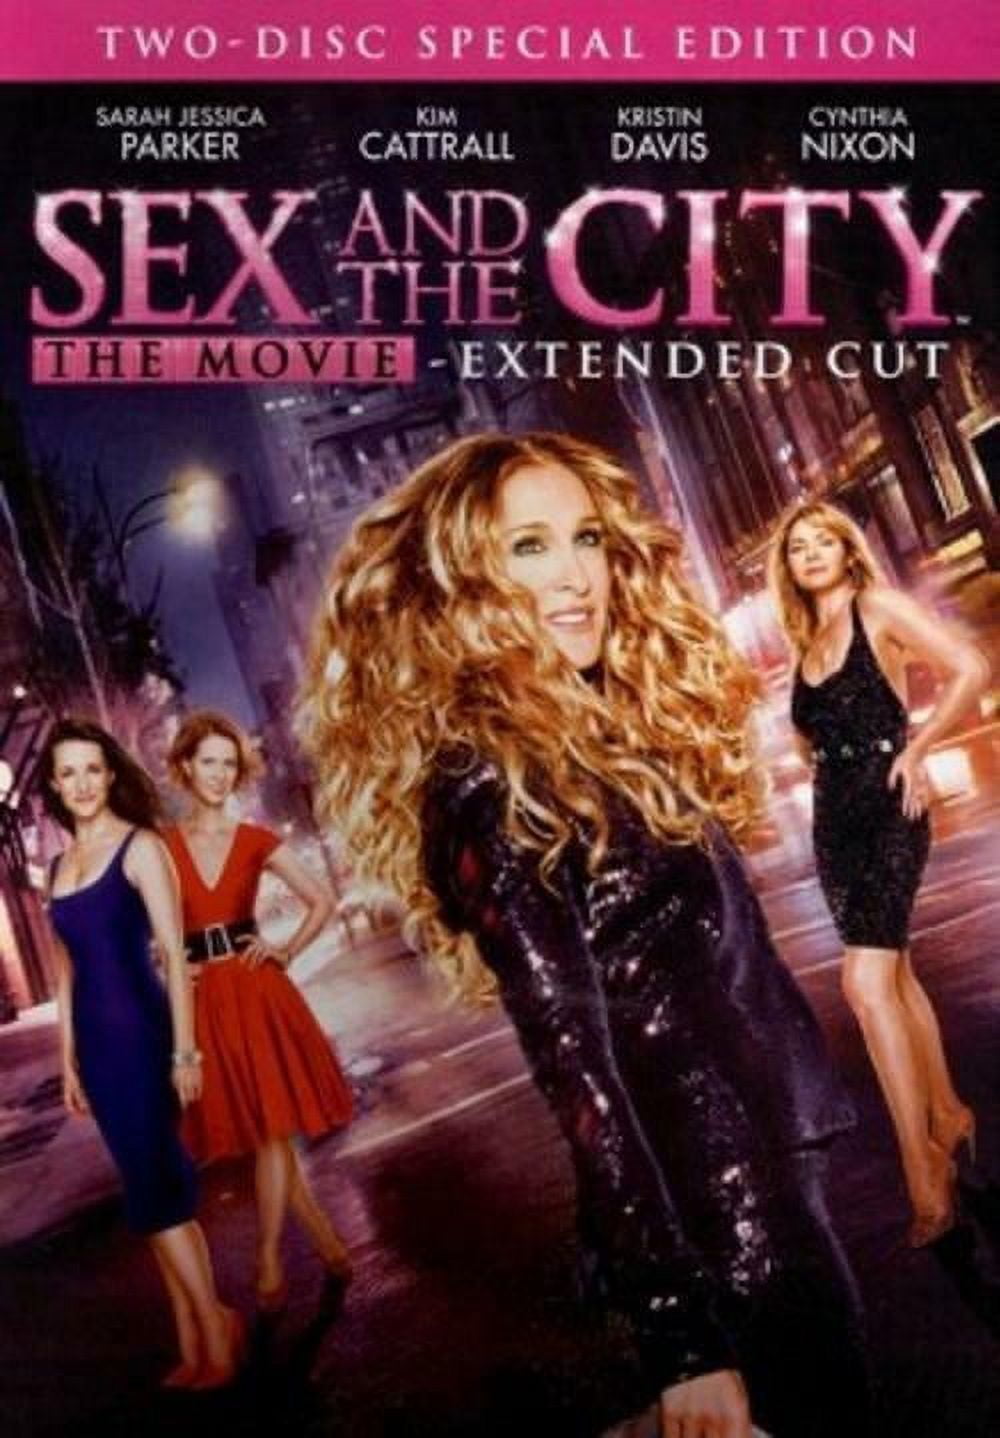 Sex and the City (DVD), New Line Home Video, Comedy - Walmart.com